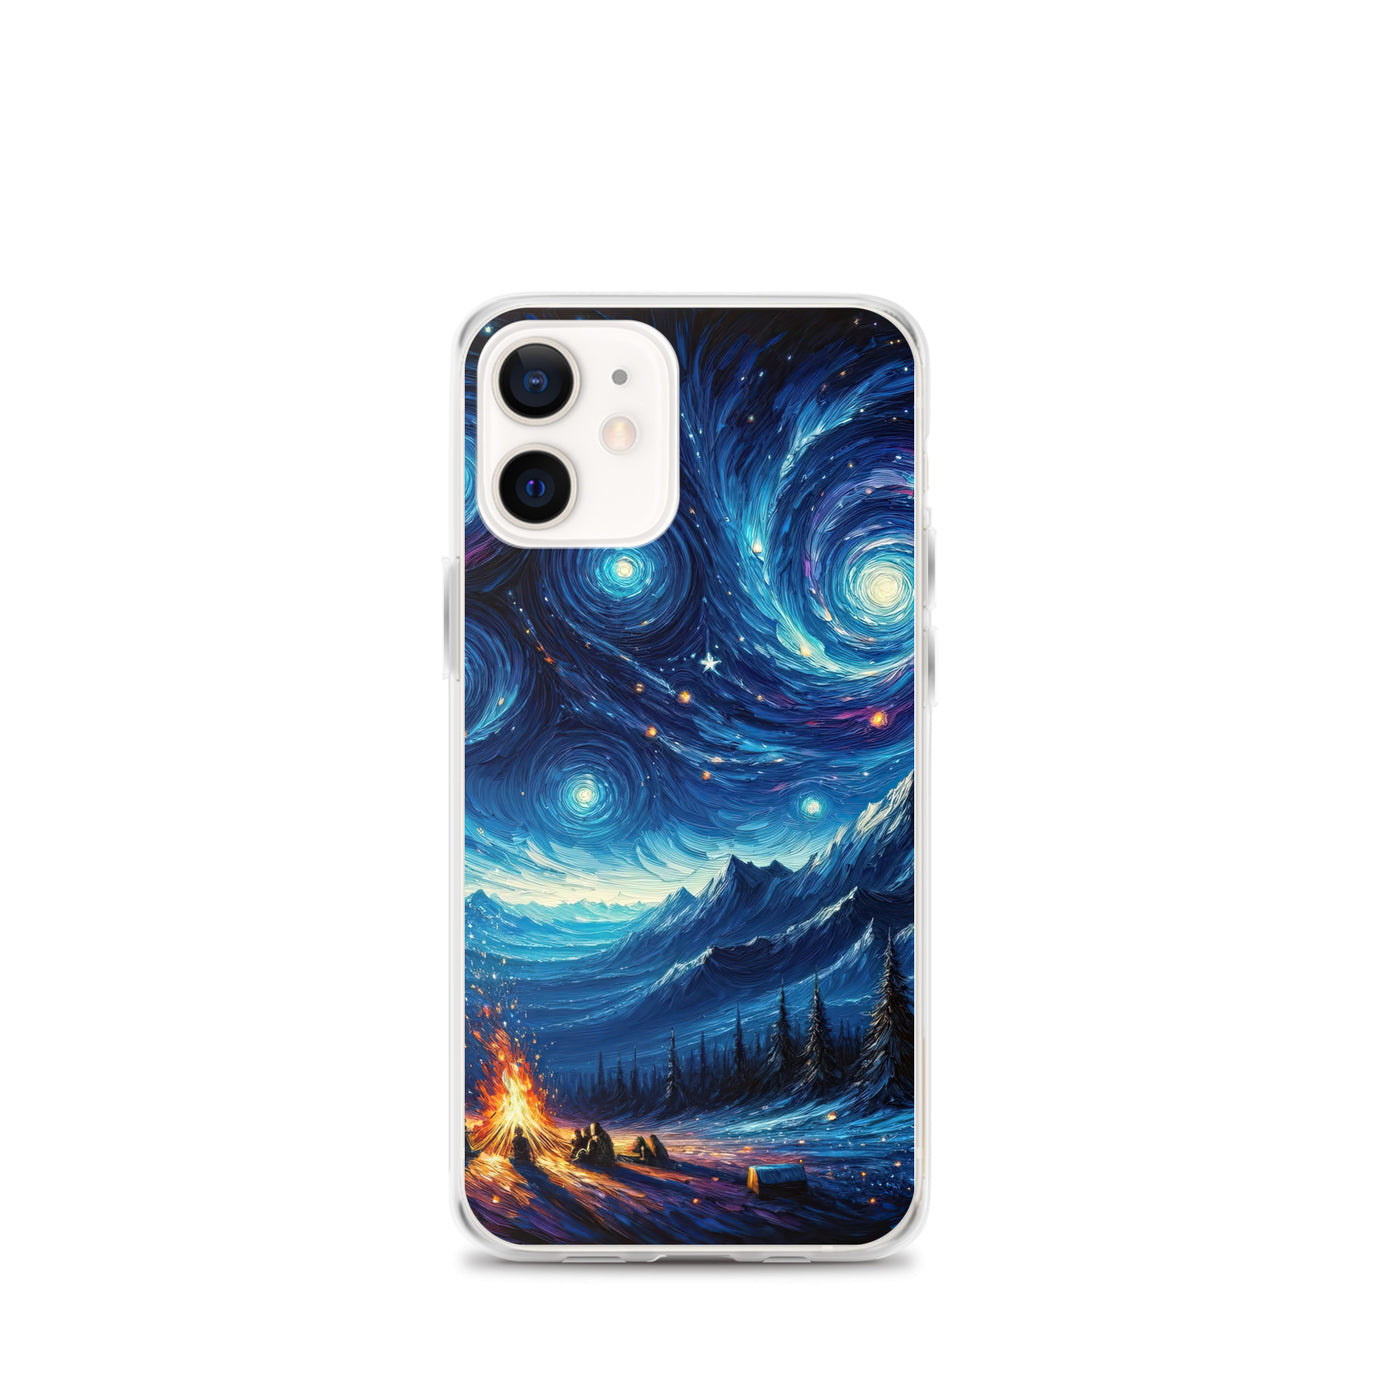 Sternennacht über den Alpen inspiriertes Ölgemälde, mystischer Nachthimmel in Blau - iPhone Schutzhülle (durchsichtig) camping xxx yyy zzz iPhone 12 mini